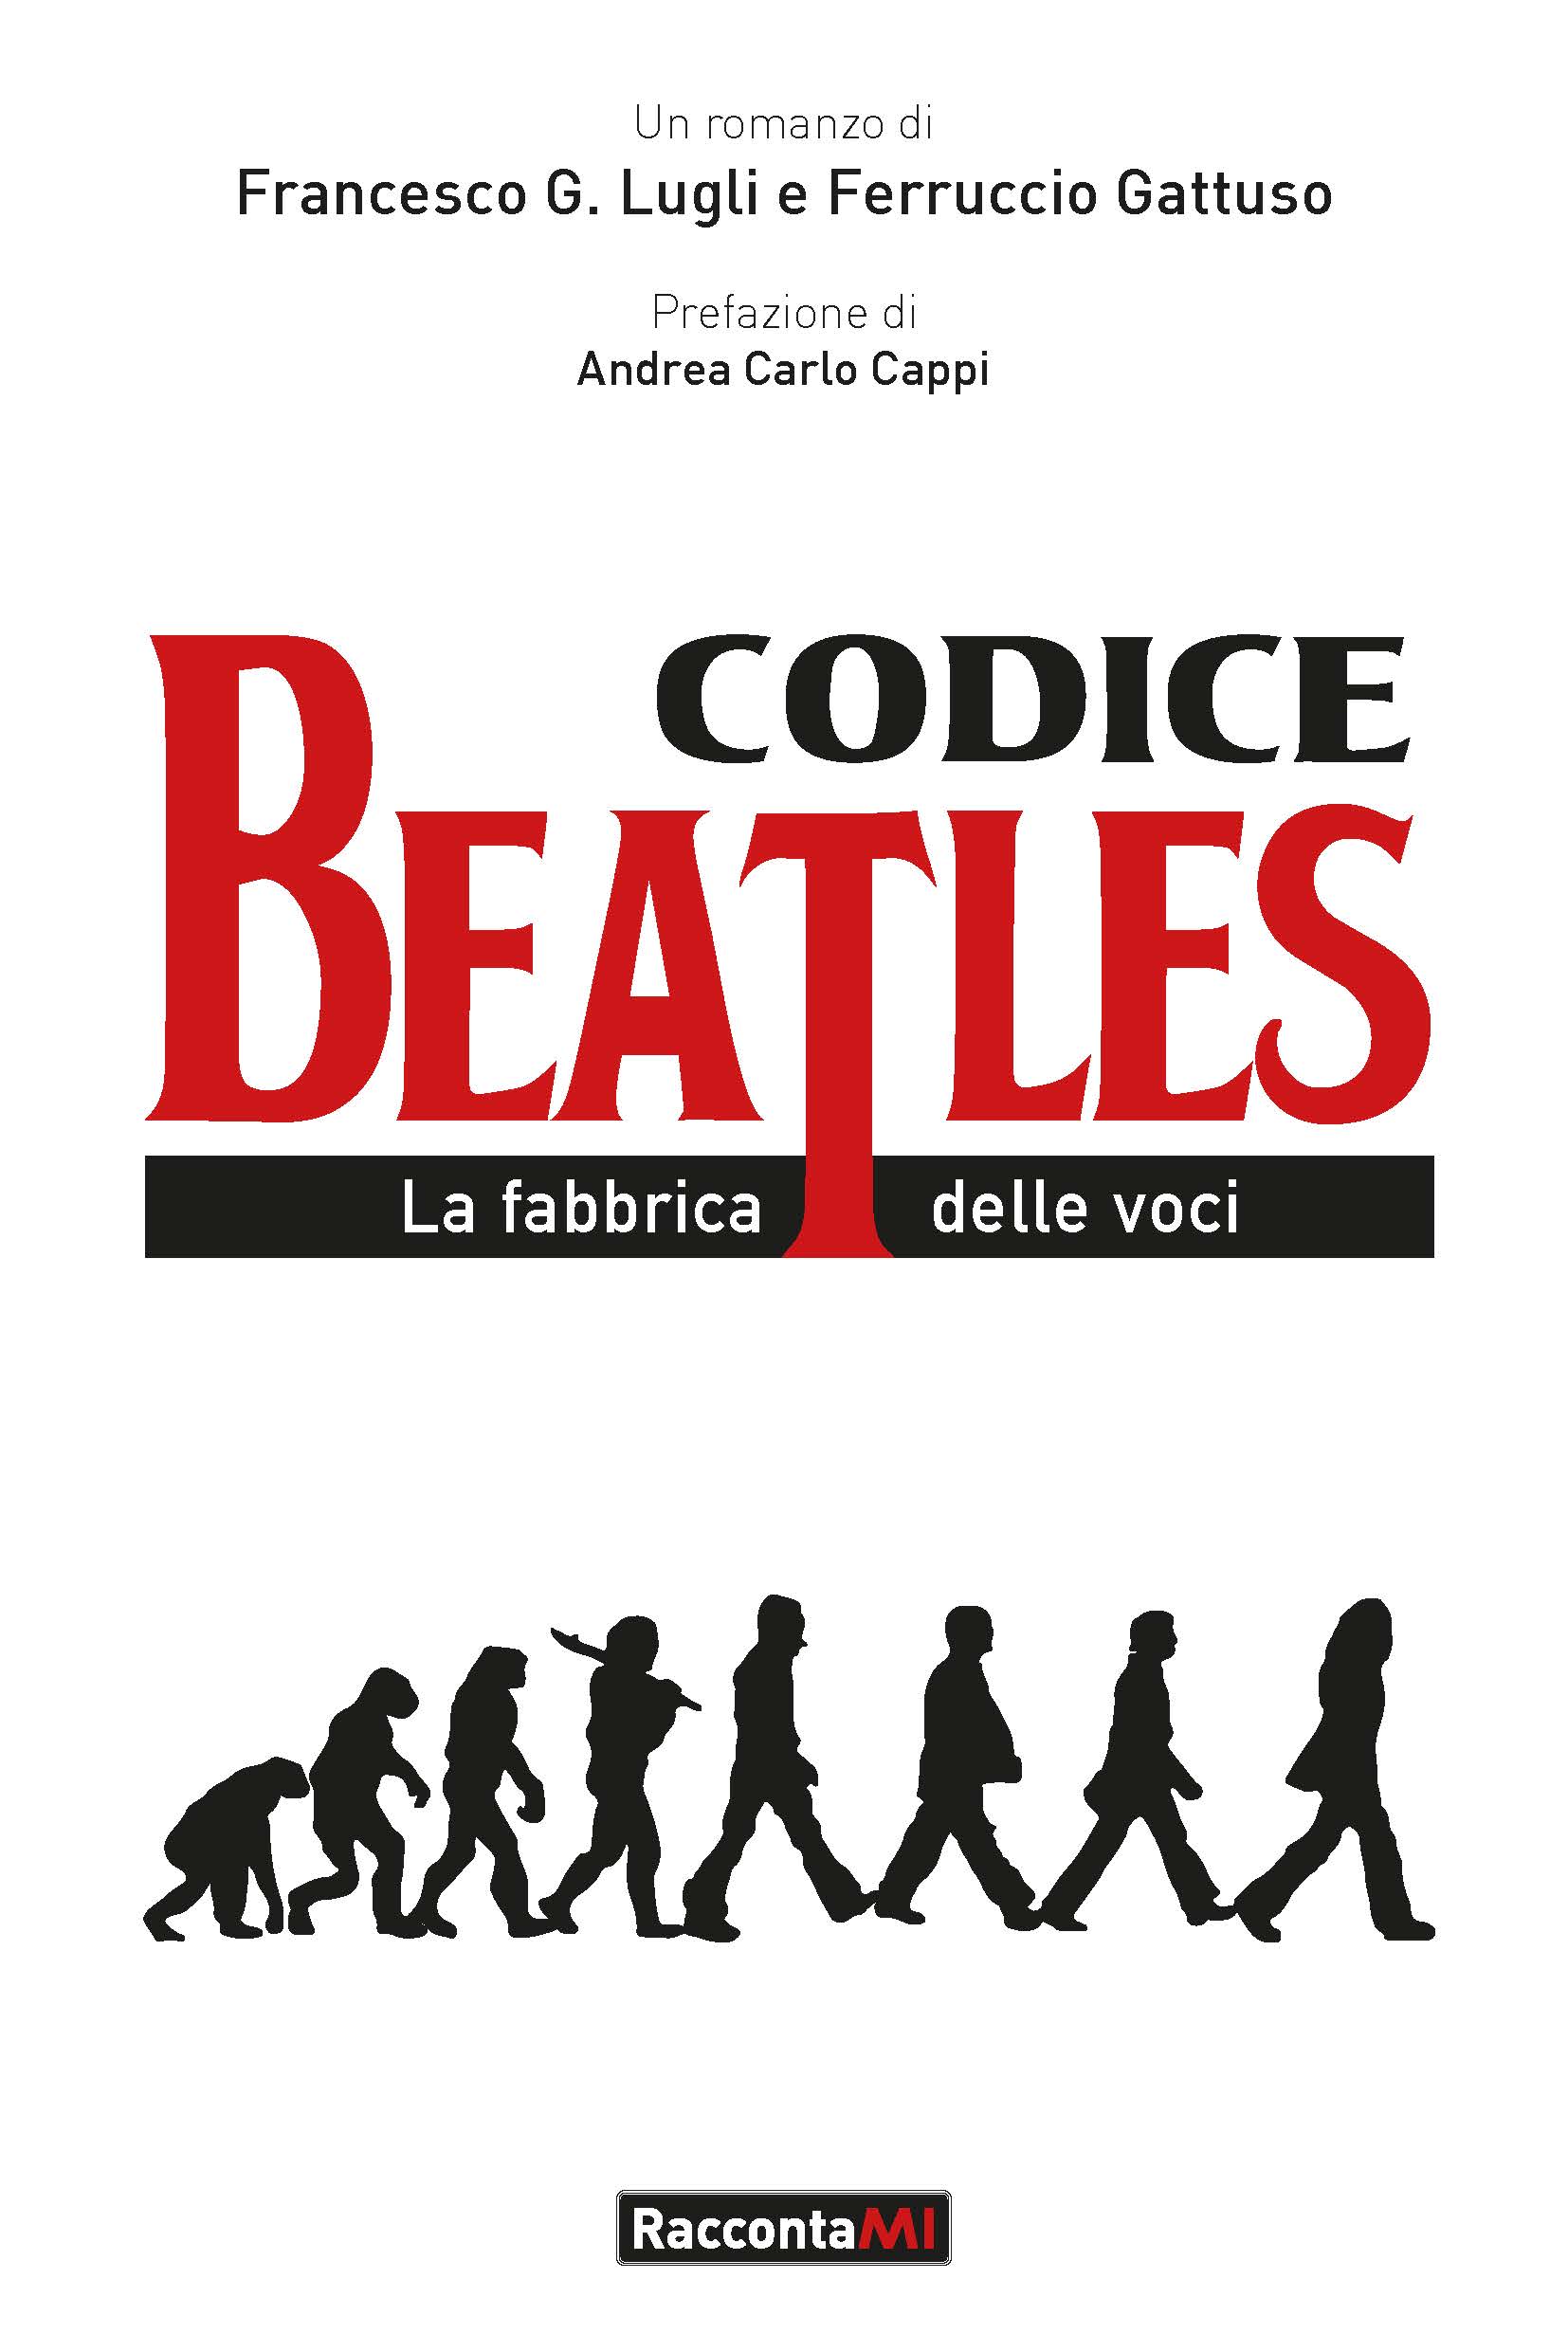 Codice Beatles: Paul, i navigli, una leggenda e un’indagine internazionale